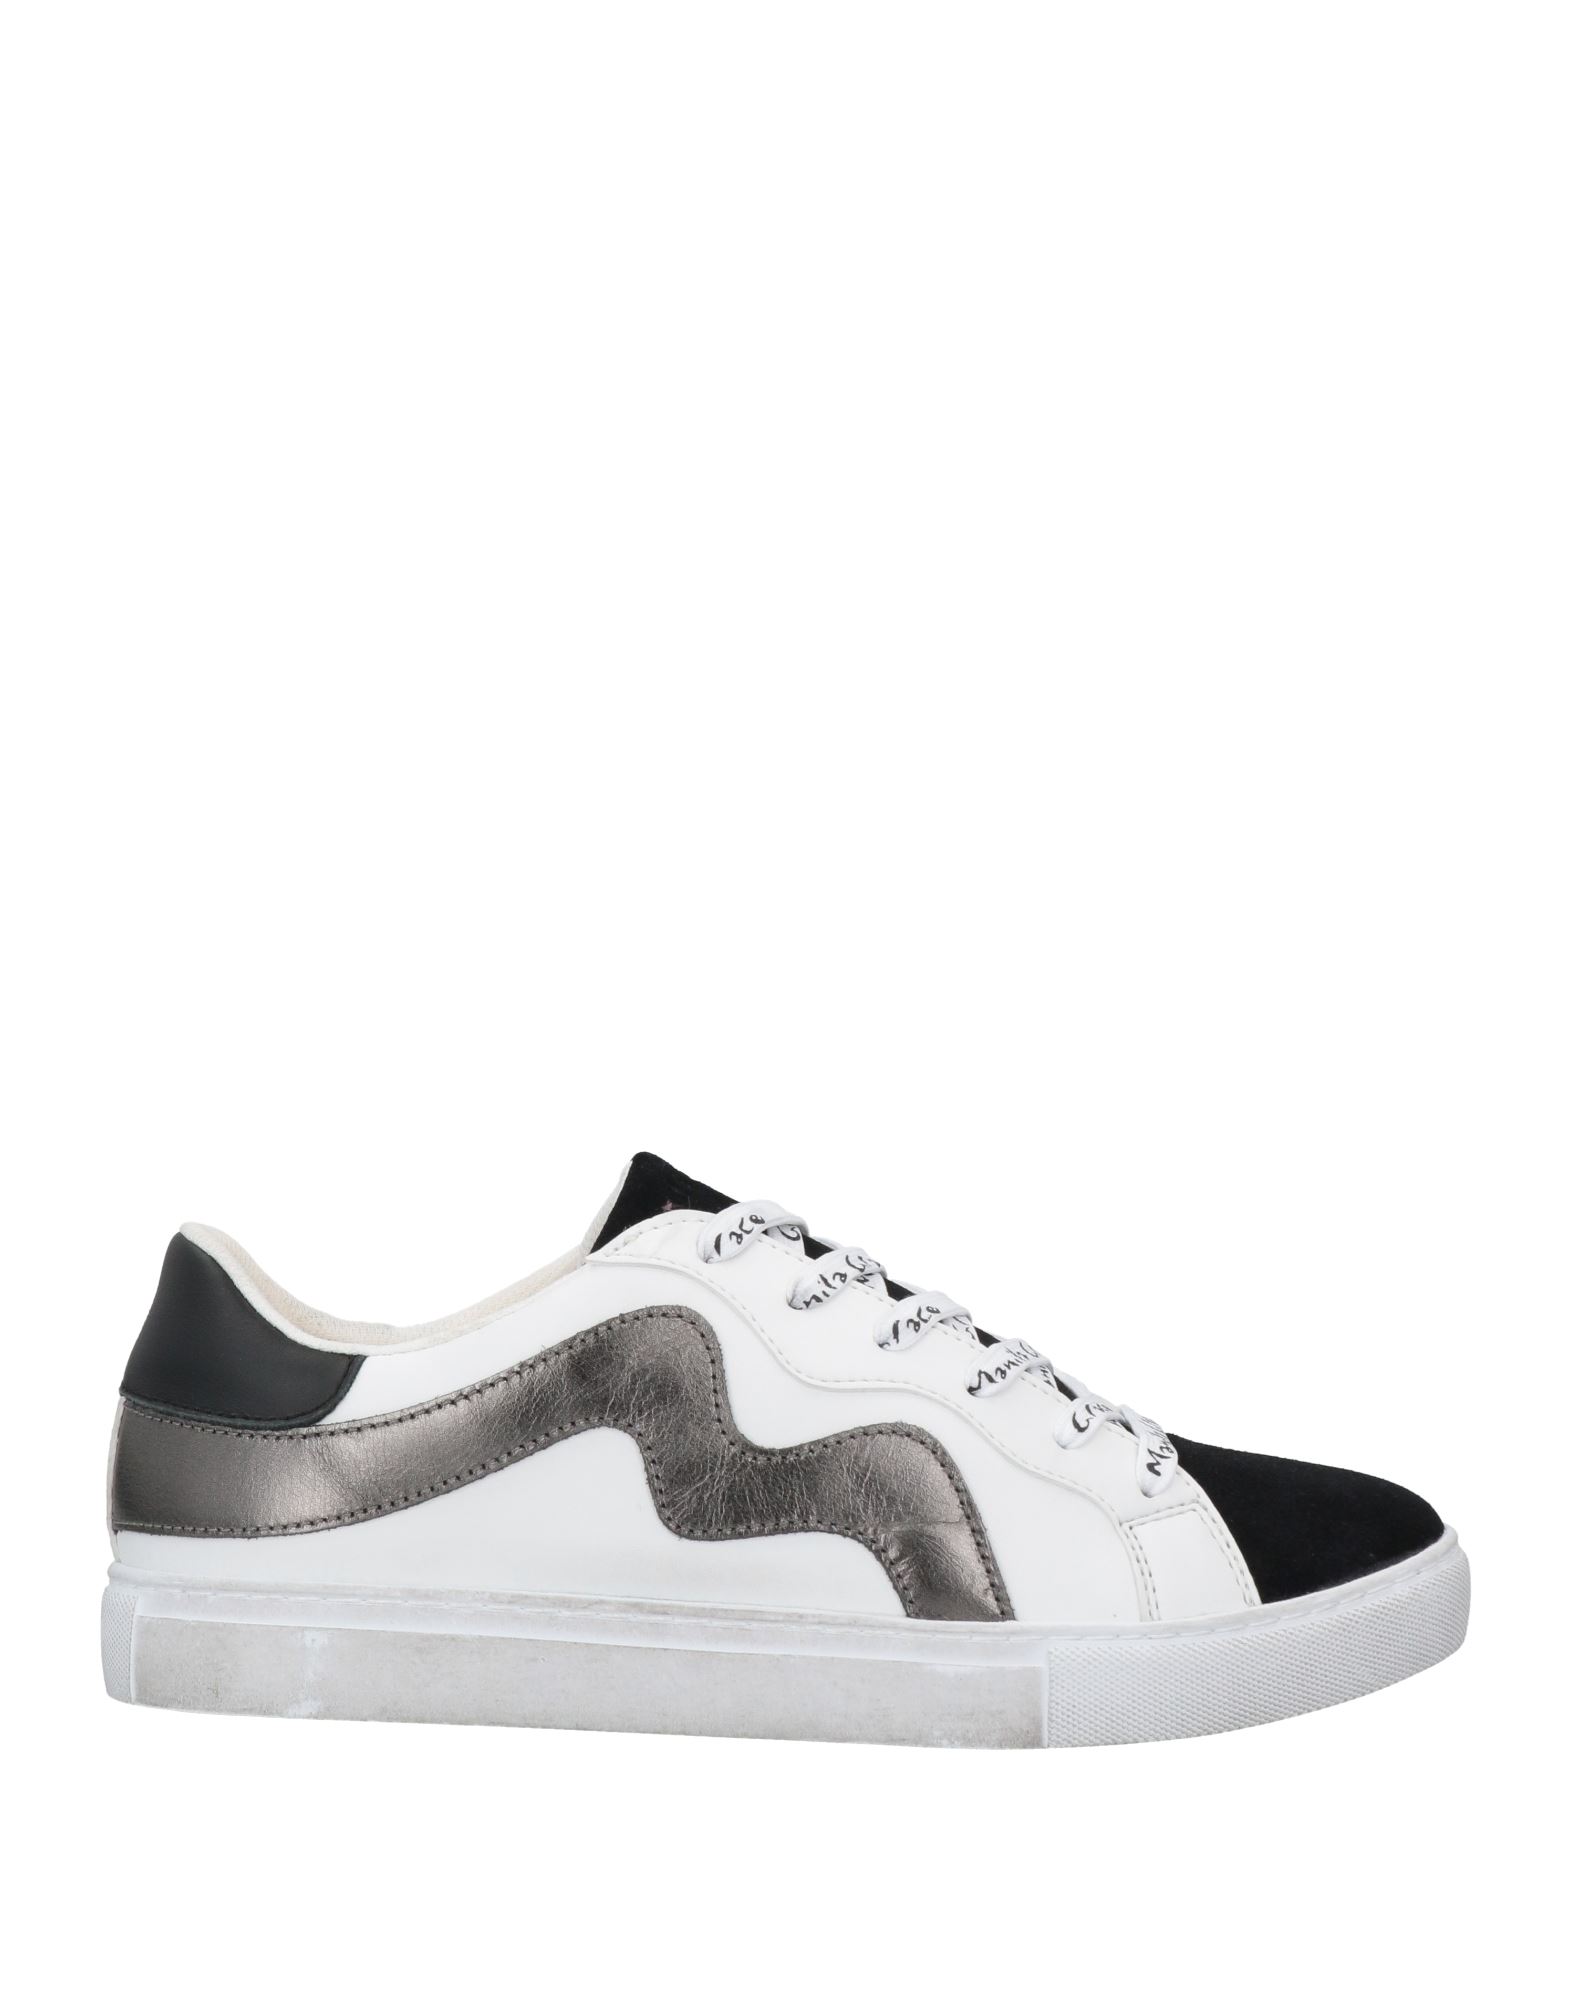 Manila Grace Sneakers In Grey